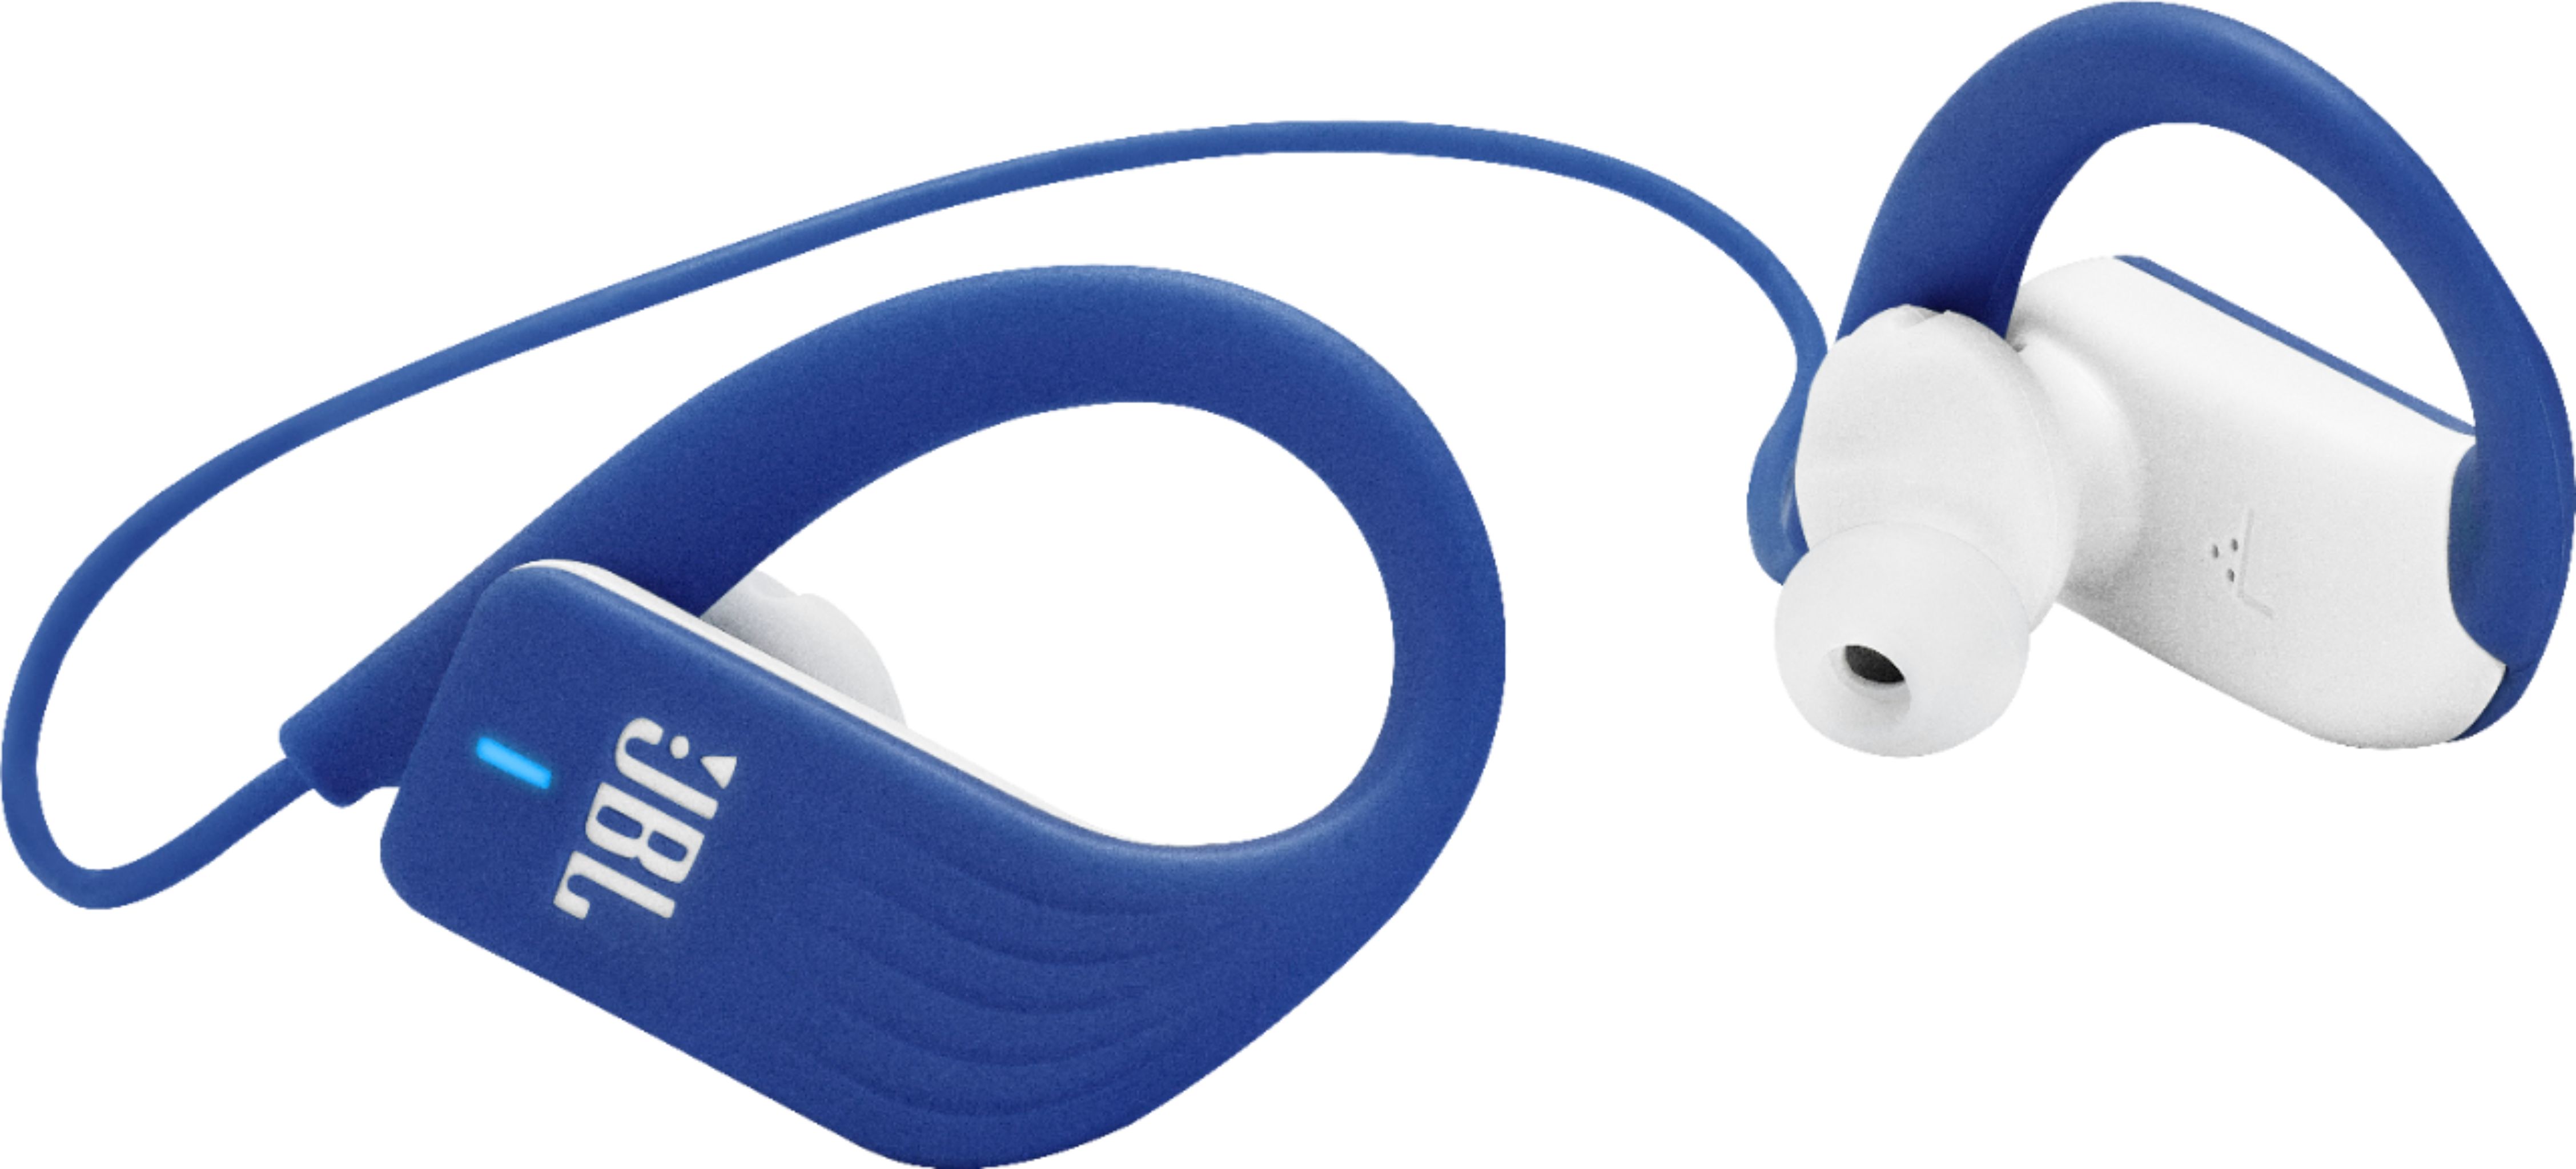 Buy JBL Wireless Bluetooth Headphones & Earphones